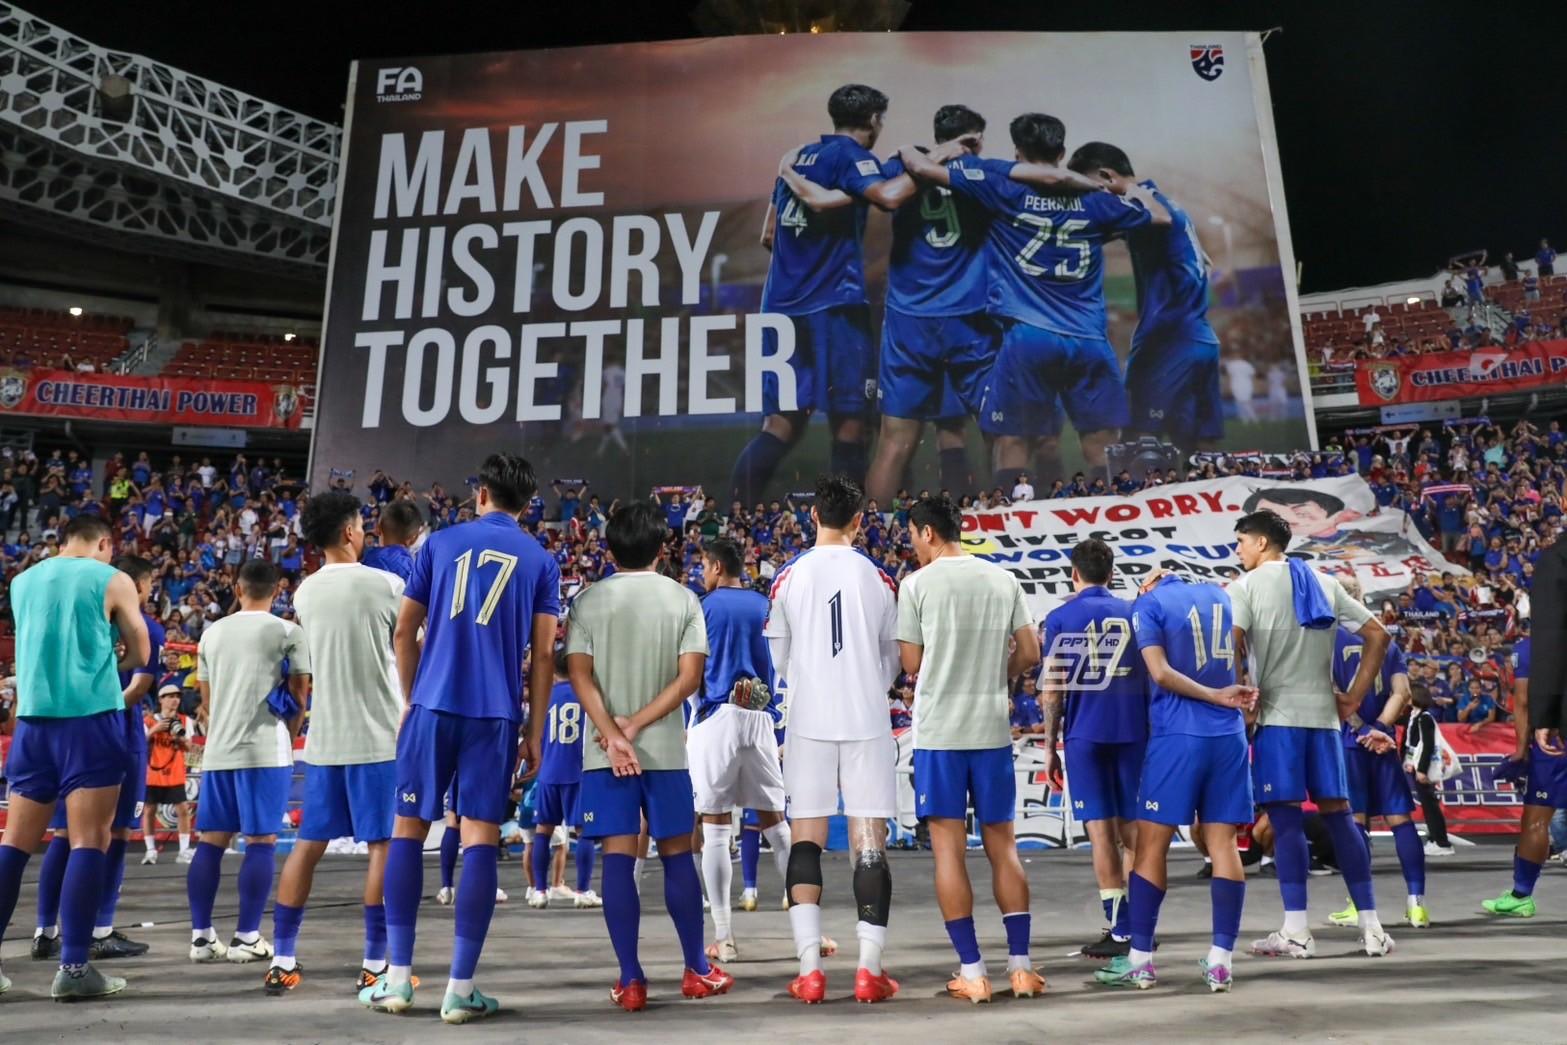 สรุป 6 ทีมผ่านเข้ารอบ 3 ฟุตบอลโลก 2026 โซนเอเชีย-ไทย มีโอกาสหรือไม่